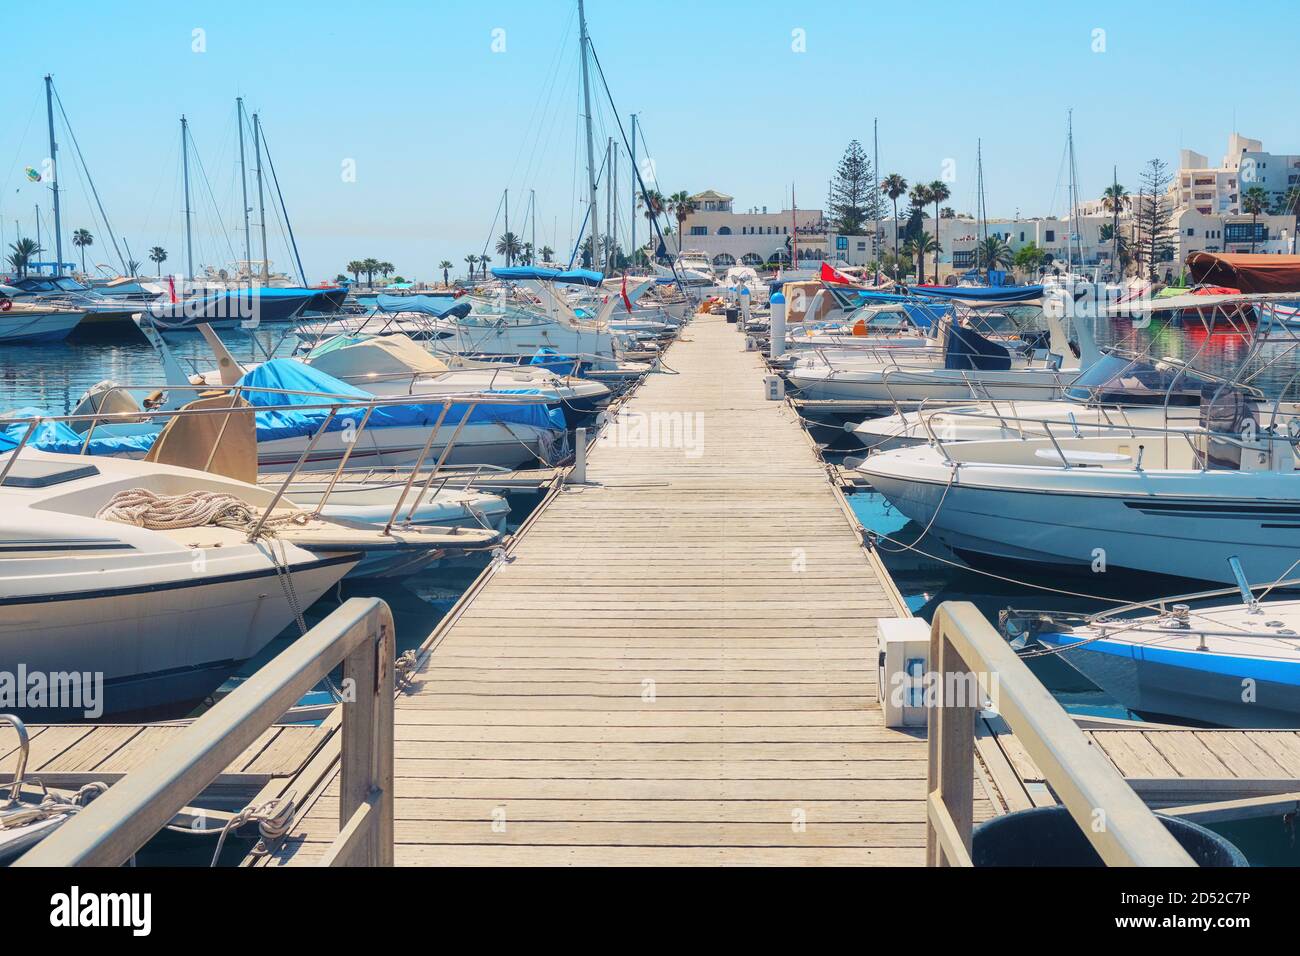 Jetée en bois avec de beaux navires et bateaux dans le port arabe - Tunisie, Sousse, El Kantaoui 06 19 2019 Banque D'Images